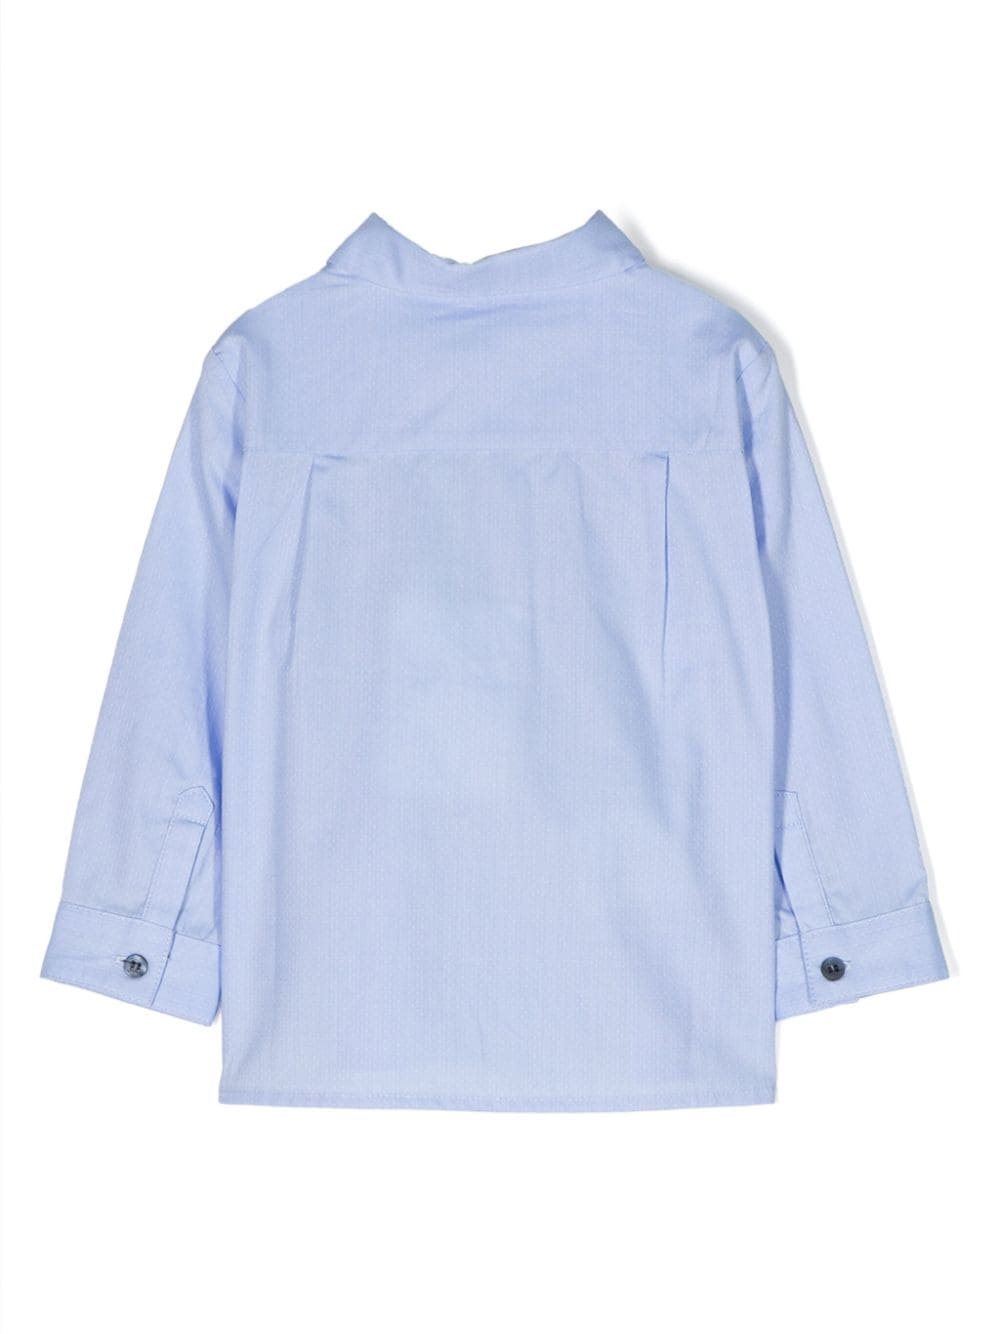 Light blue shirt for newborns